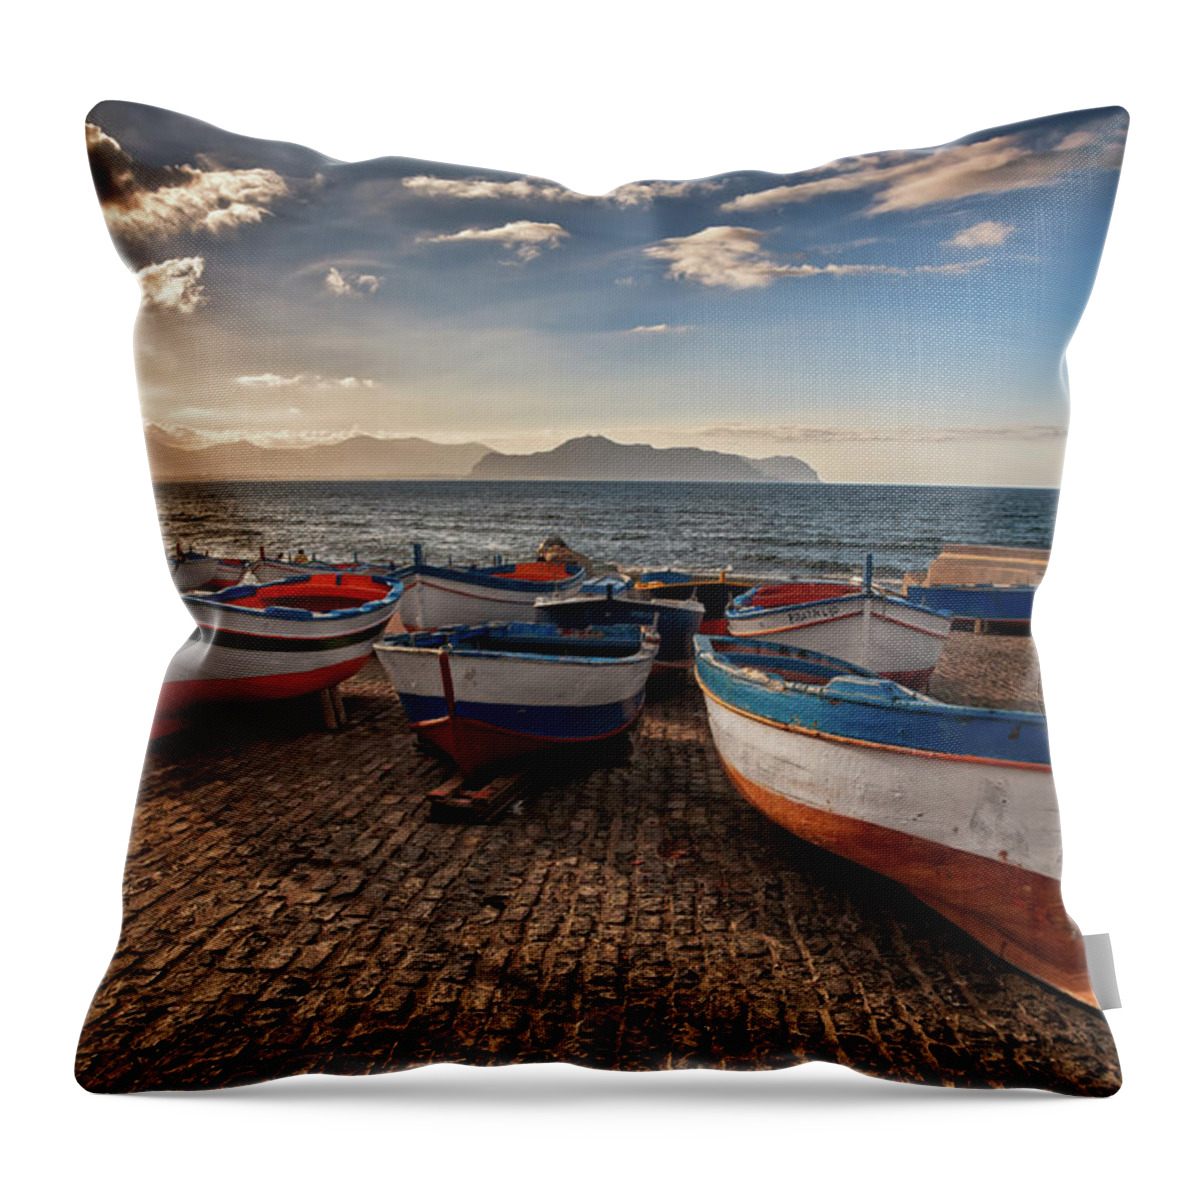 Sicily Throw Pillow featuring the photograph Aspra Boatyard by Fabio Montalto